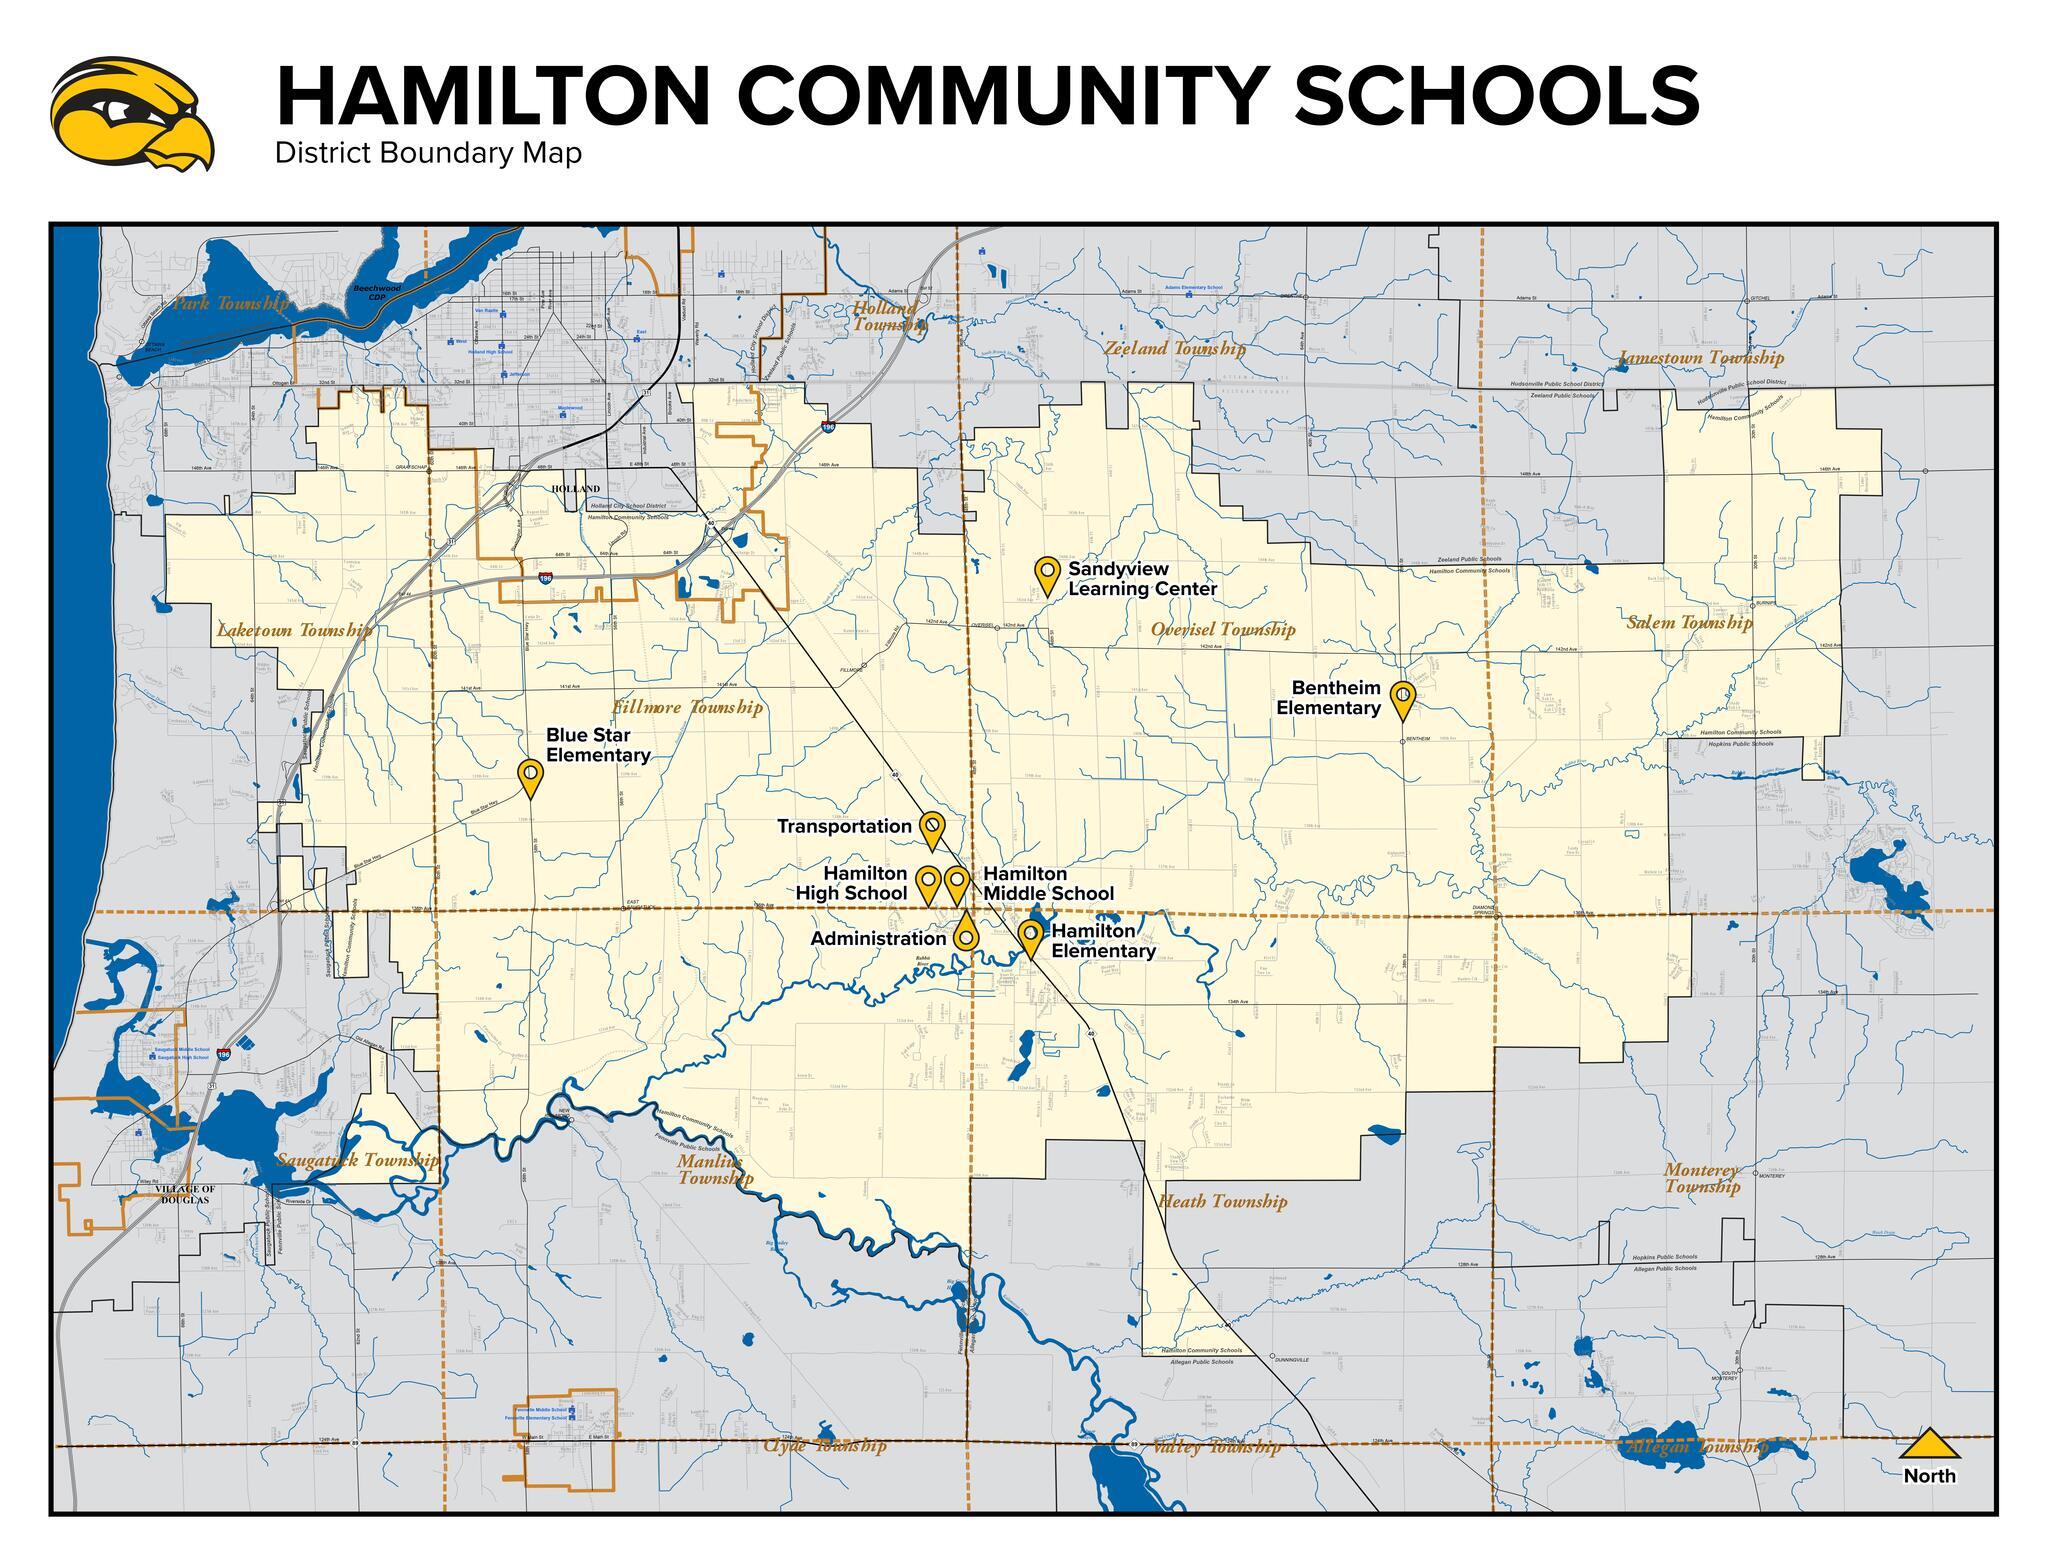 Hamilton Community Schools Boundary Map